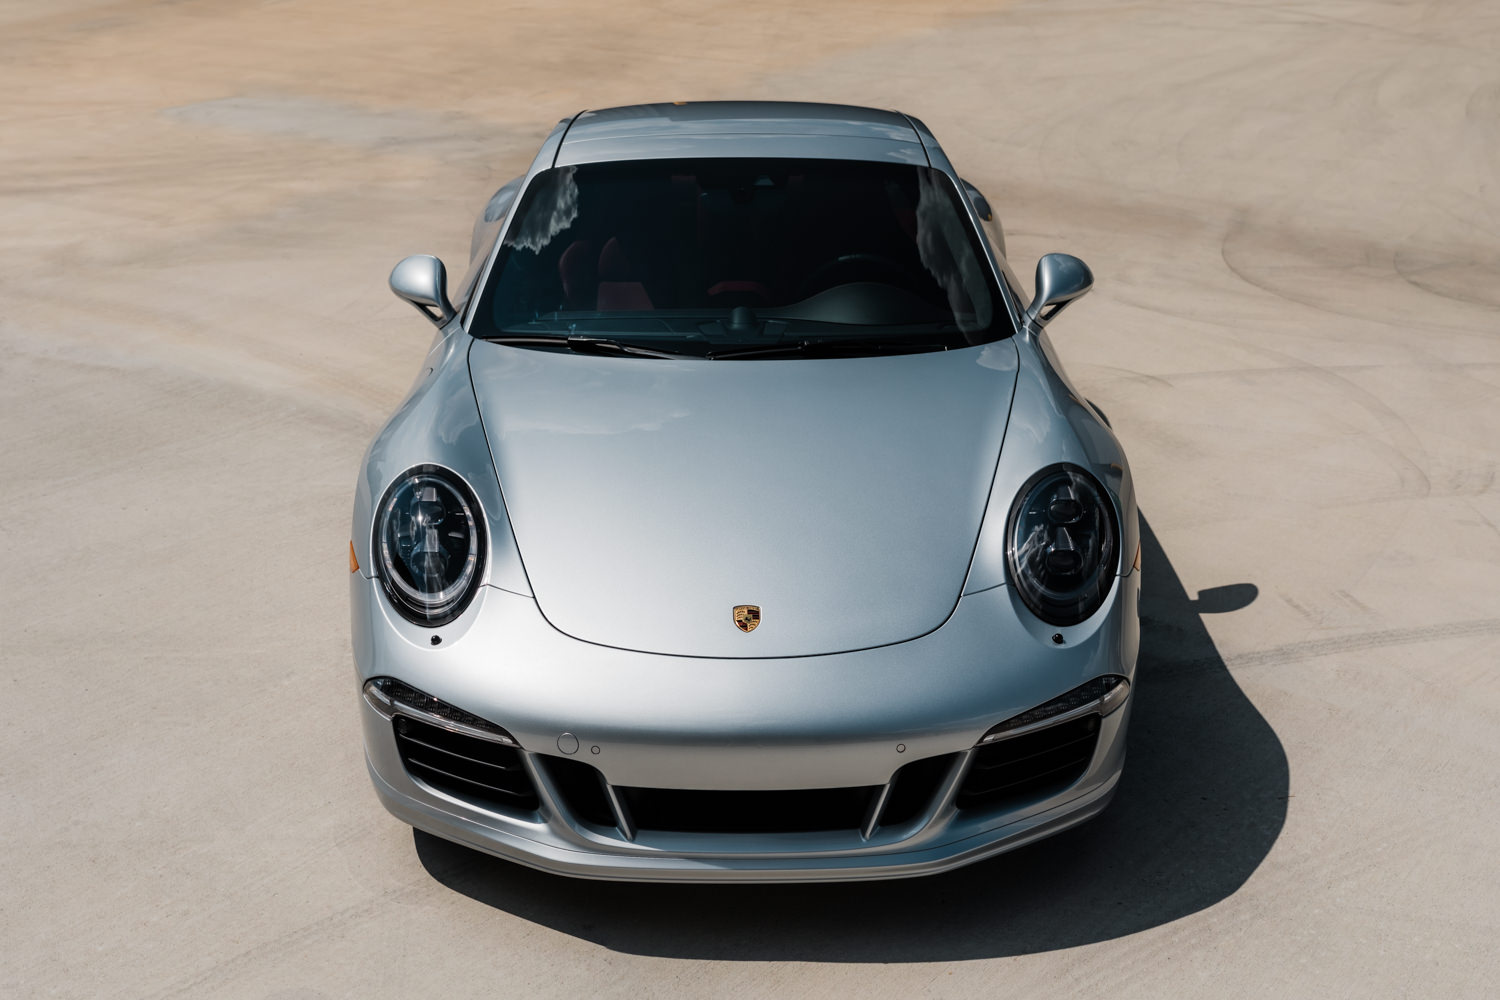 Porsche 911 - Porsche - Wichita Clear Bra - XPEL - XPEL Ultimate - Ceramic Pro - Ceramic Coating - Car Detailing - Porsche 911 GTS-158.jpg